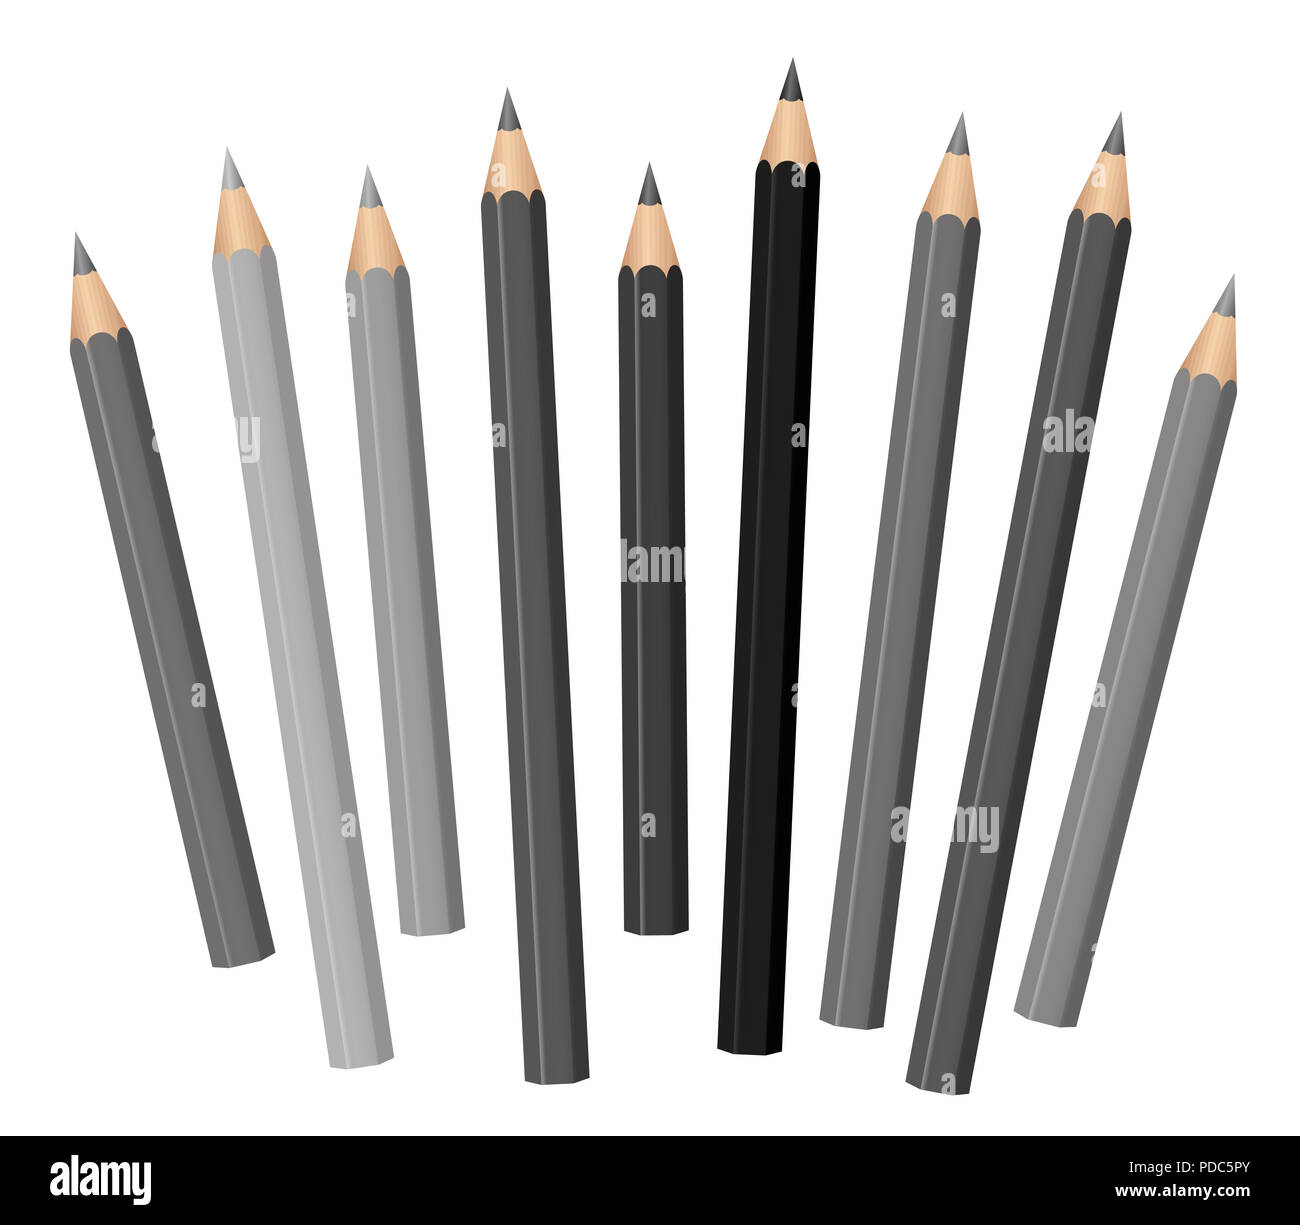 Grau Bleistifte - verschiedene Farben und Längen - lose angeordnete-grauen Tönen von Hellgrau bis tief schwarz. Stockfoto